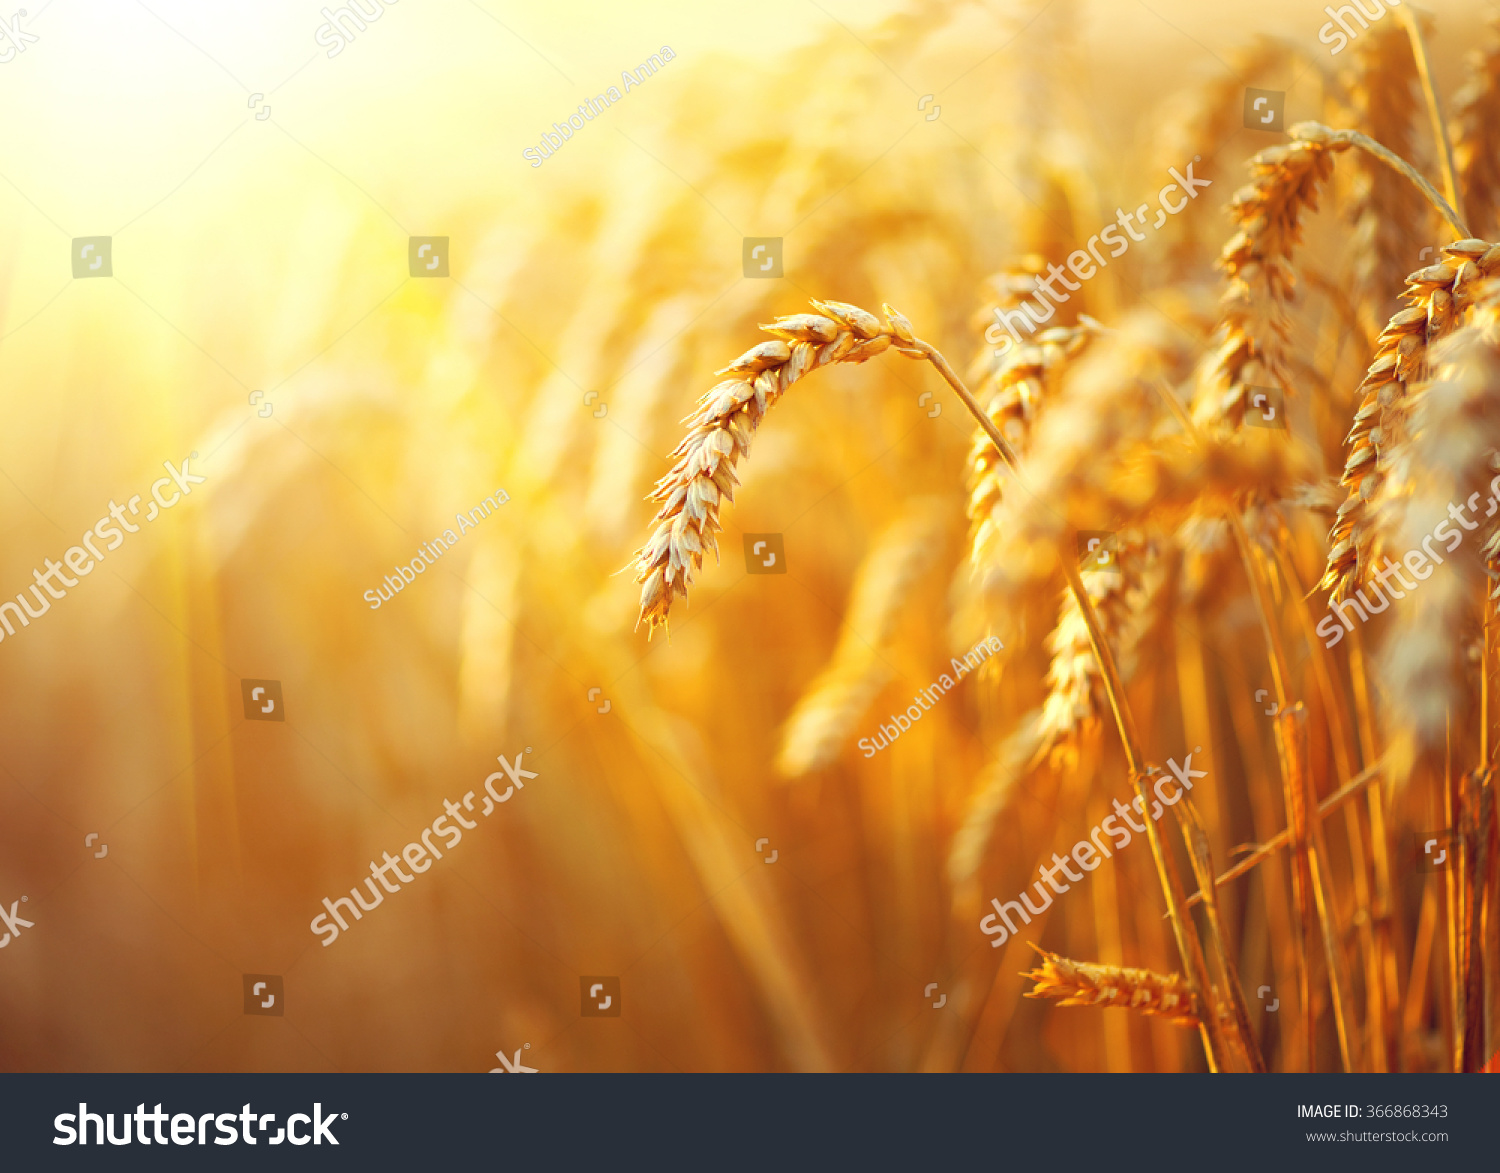 Pole pszenicy. Uszy złotej pszenicy z bliska. Piękny krajobraz Zachodu Przyrody. Krajobrazy wiejskie pod świecącym słońcem. Tło dojrzewających uszu pola pszenicy łąkowej. Koncepcja bogatego zbioru #366868343